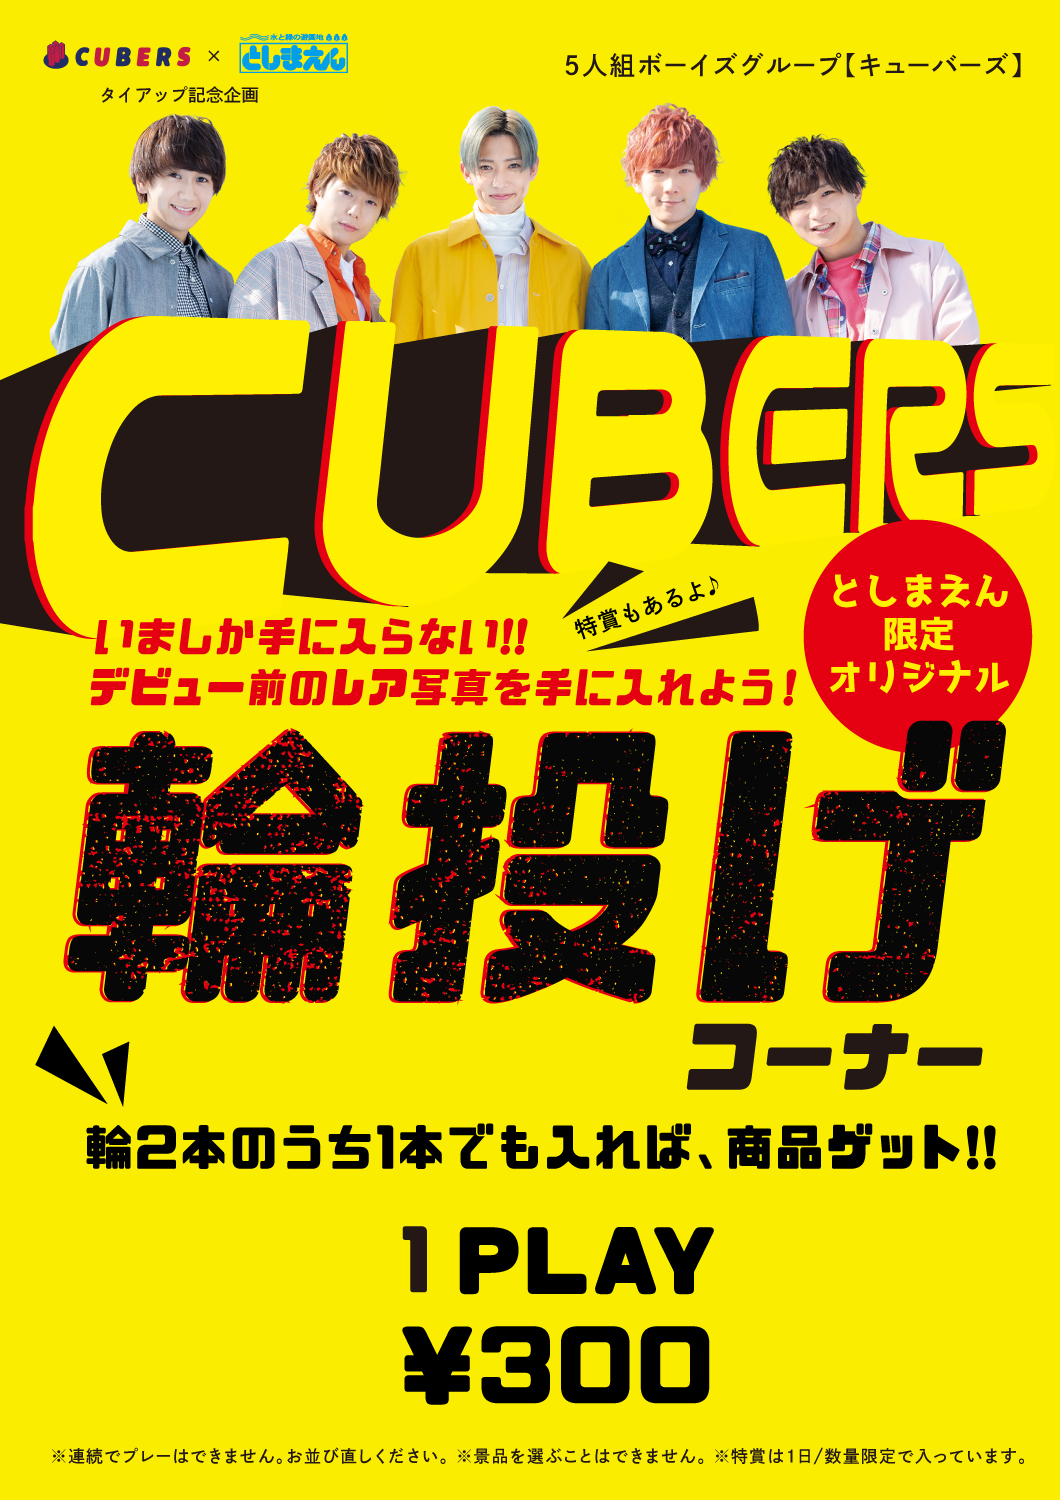 【NEWS】3/21〜3/30 としまえんで”CUBERS輪投げゲーム”実施！